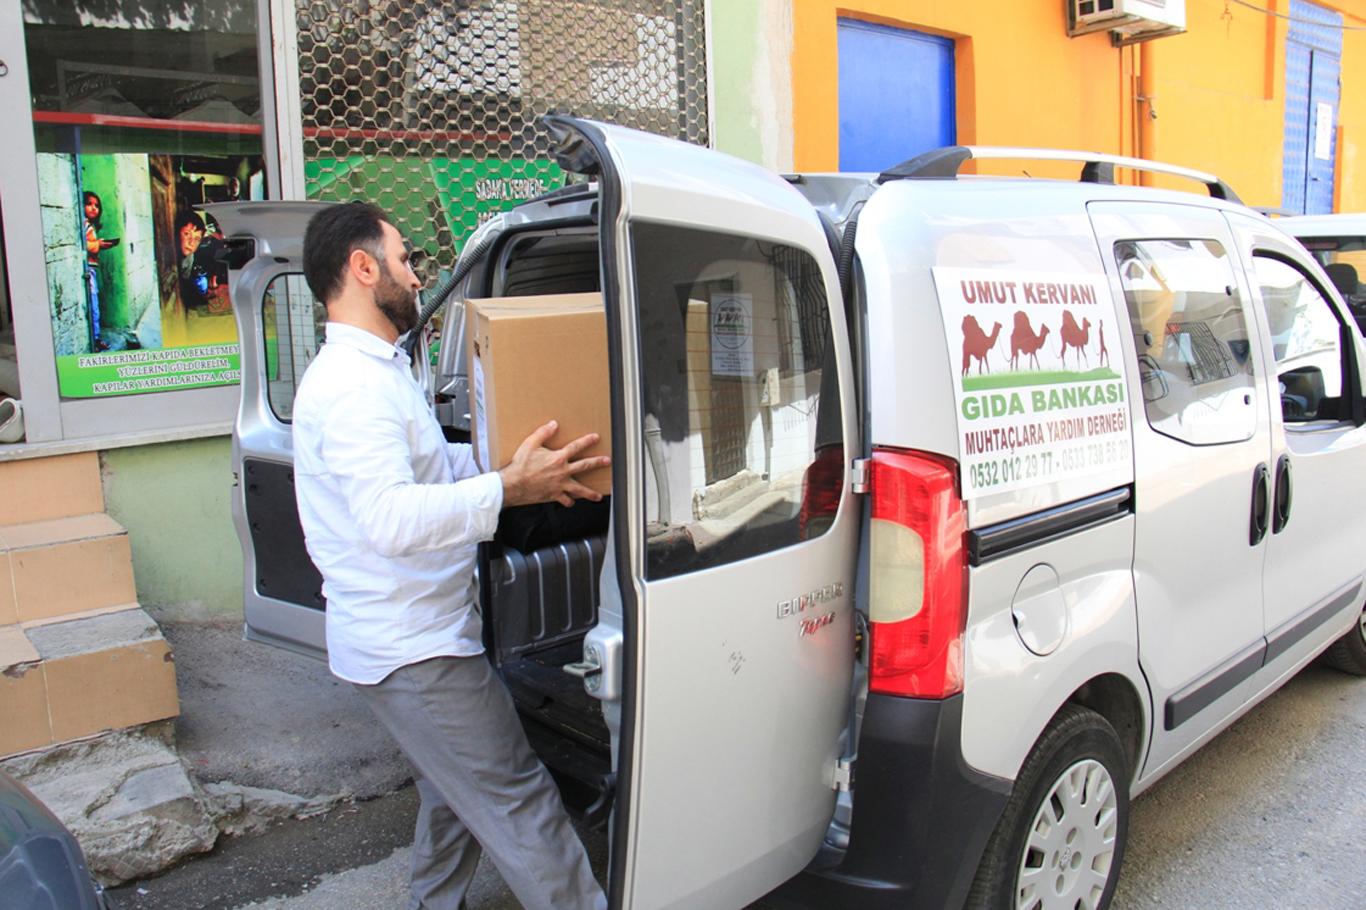 Bursa Umut Kervanı Ramazan yardımlarına devam ediyor